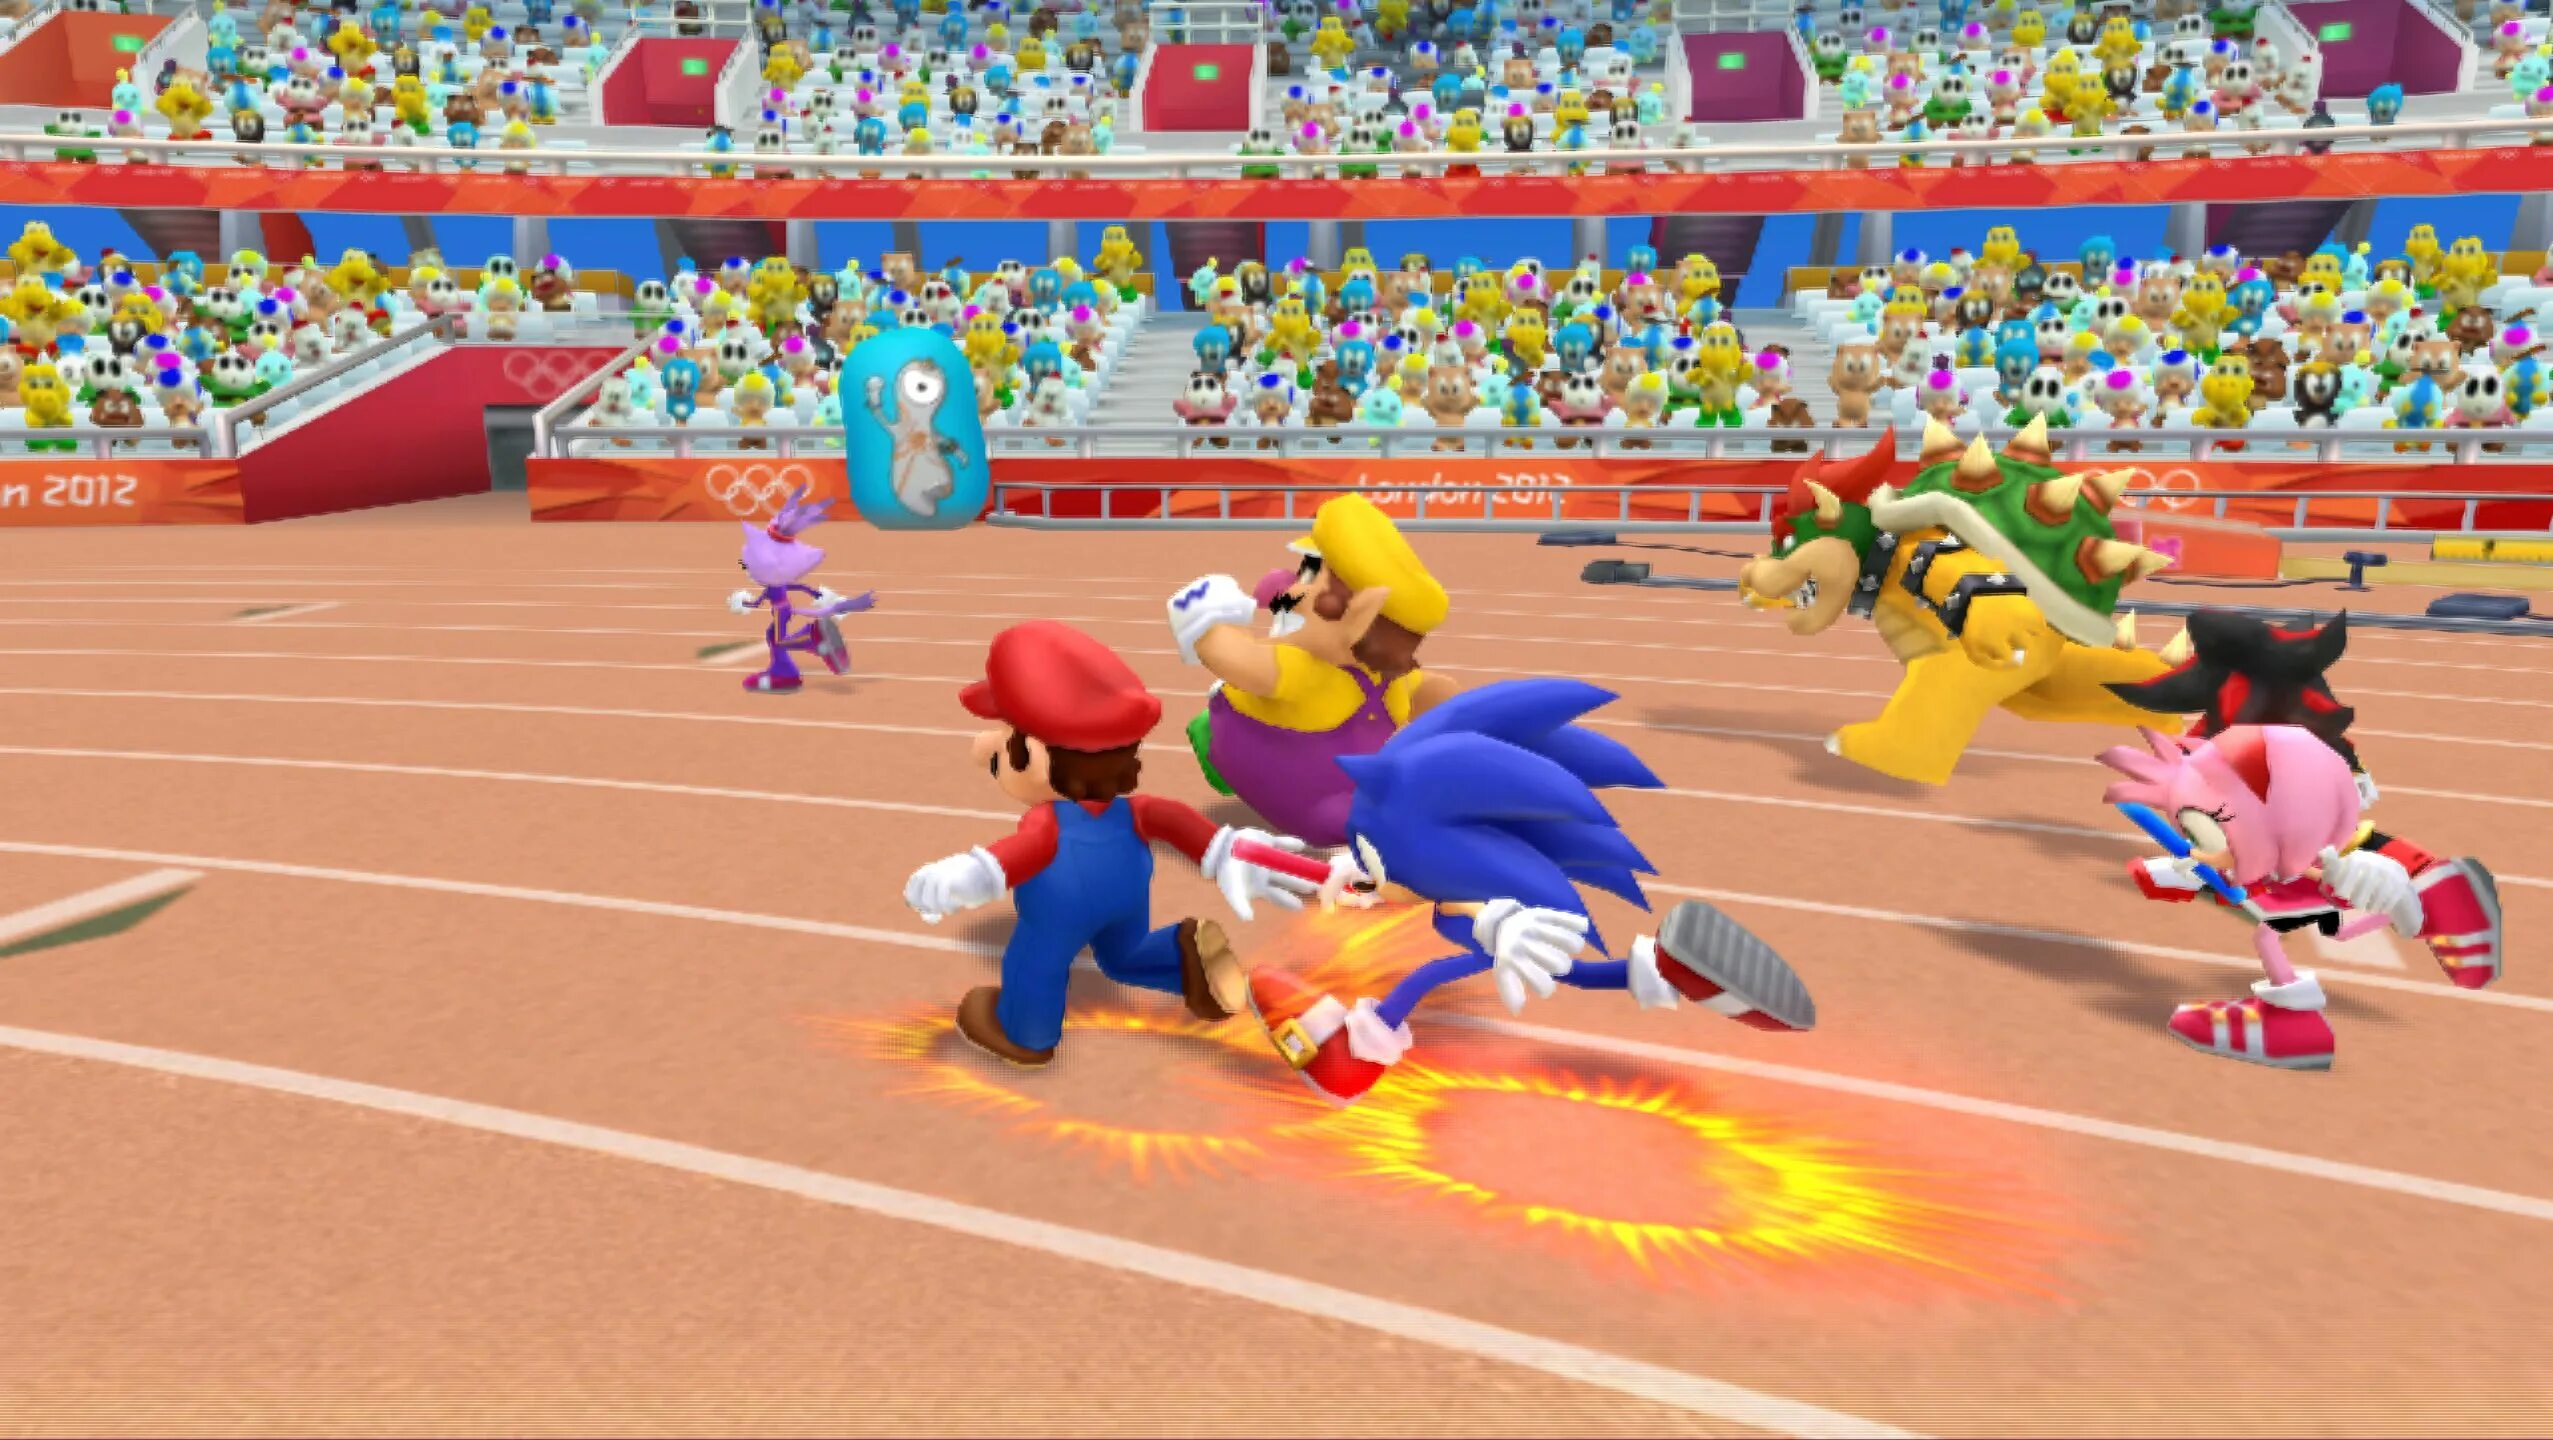 Mario & Sonic at the London 2012. Mario & Sonic at the London 2012 Olympic games. Mario & Sonic at the London 2012 Wii. Марио и Соник на Олимпийских играх 2012.